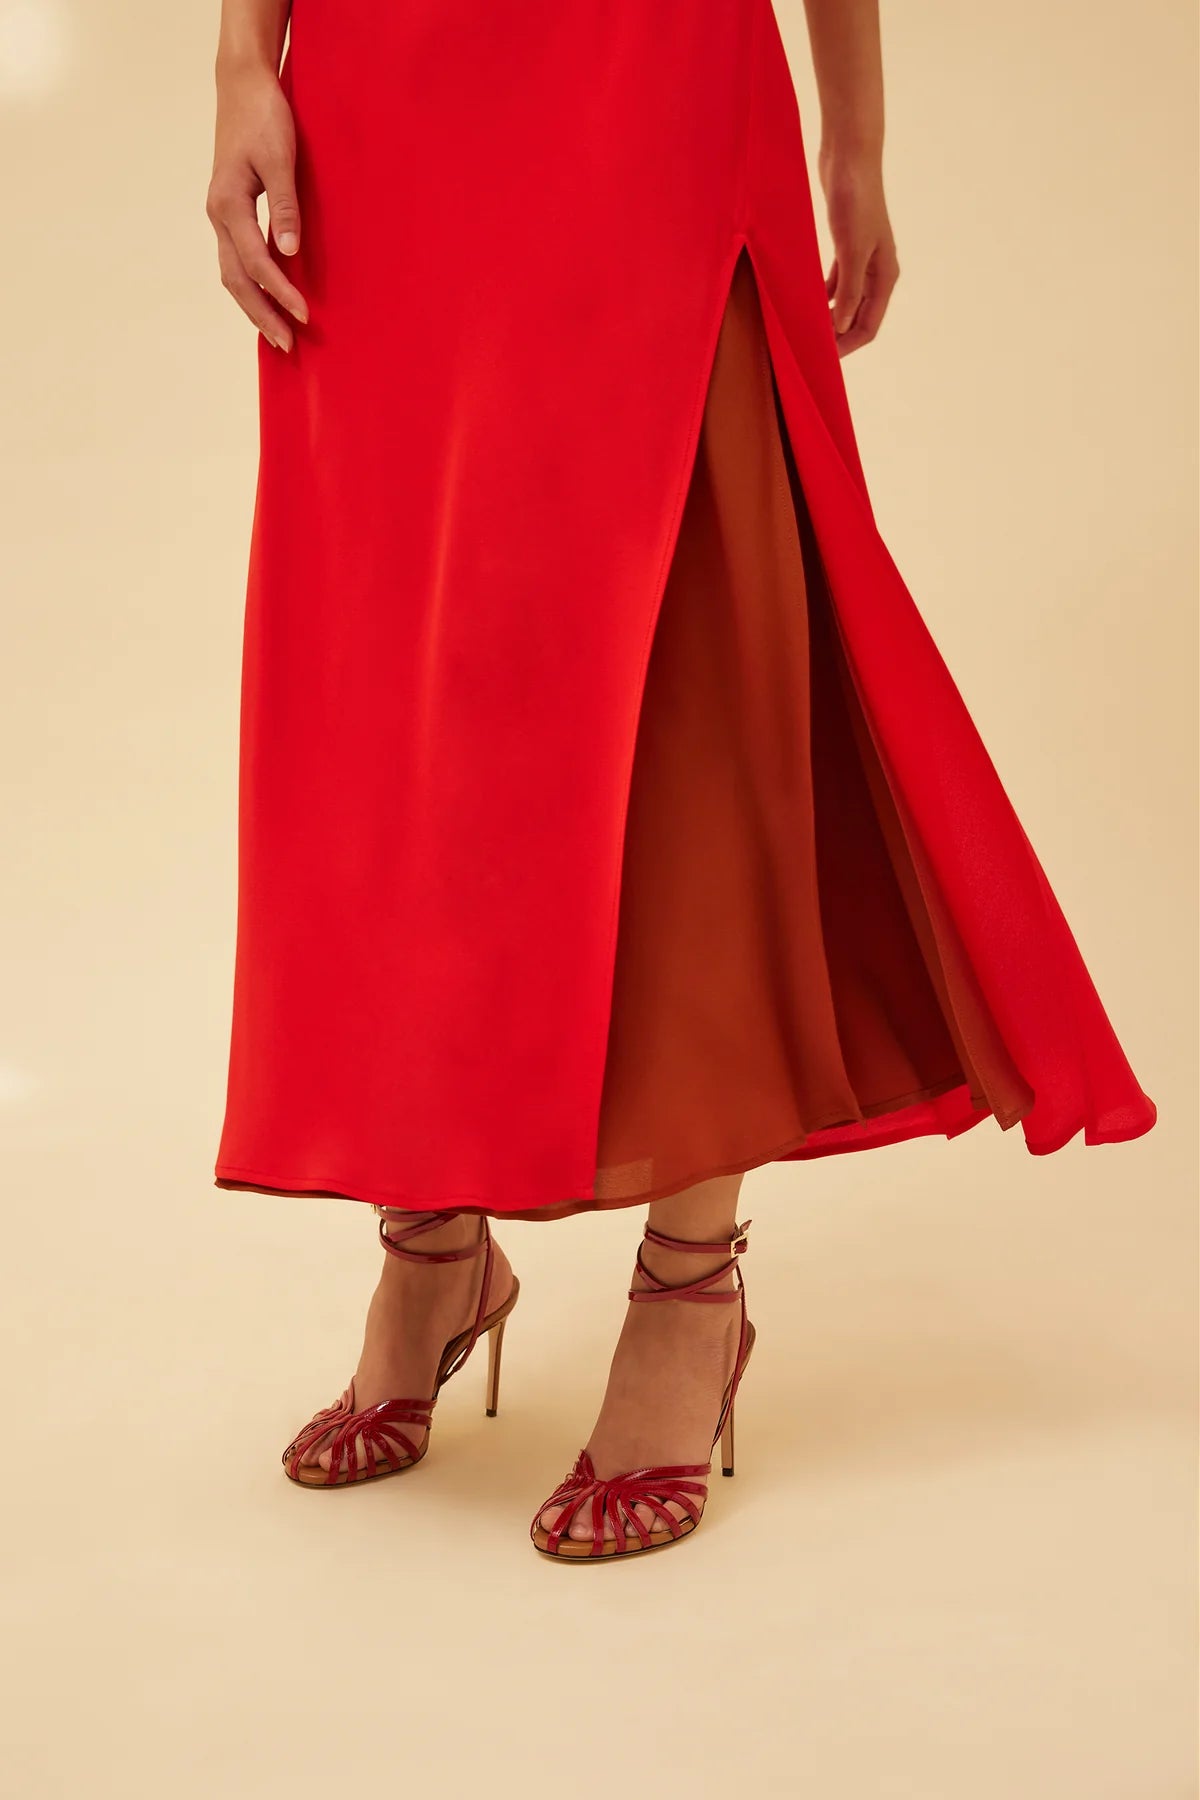 Vestido lencero bicolor rojo-avellana